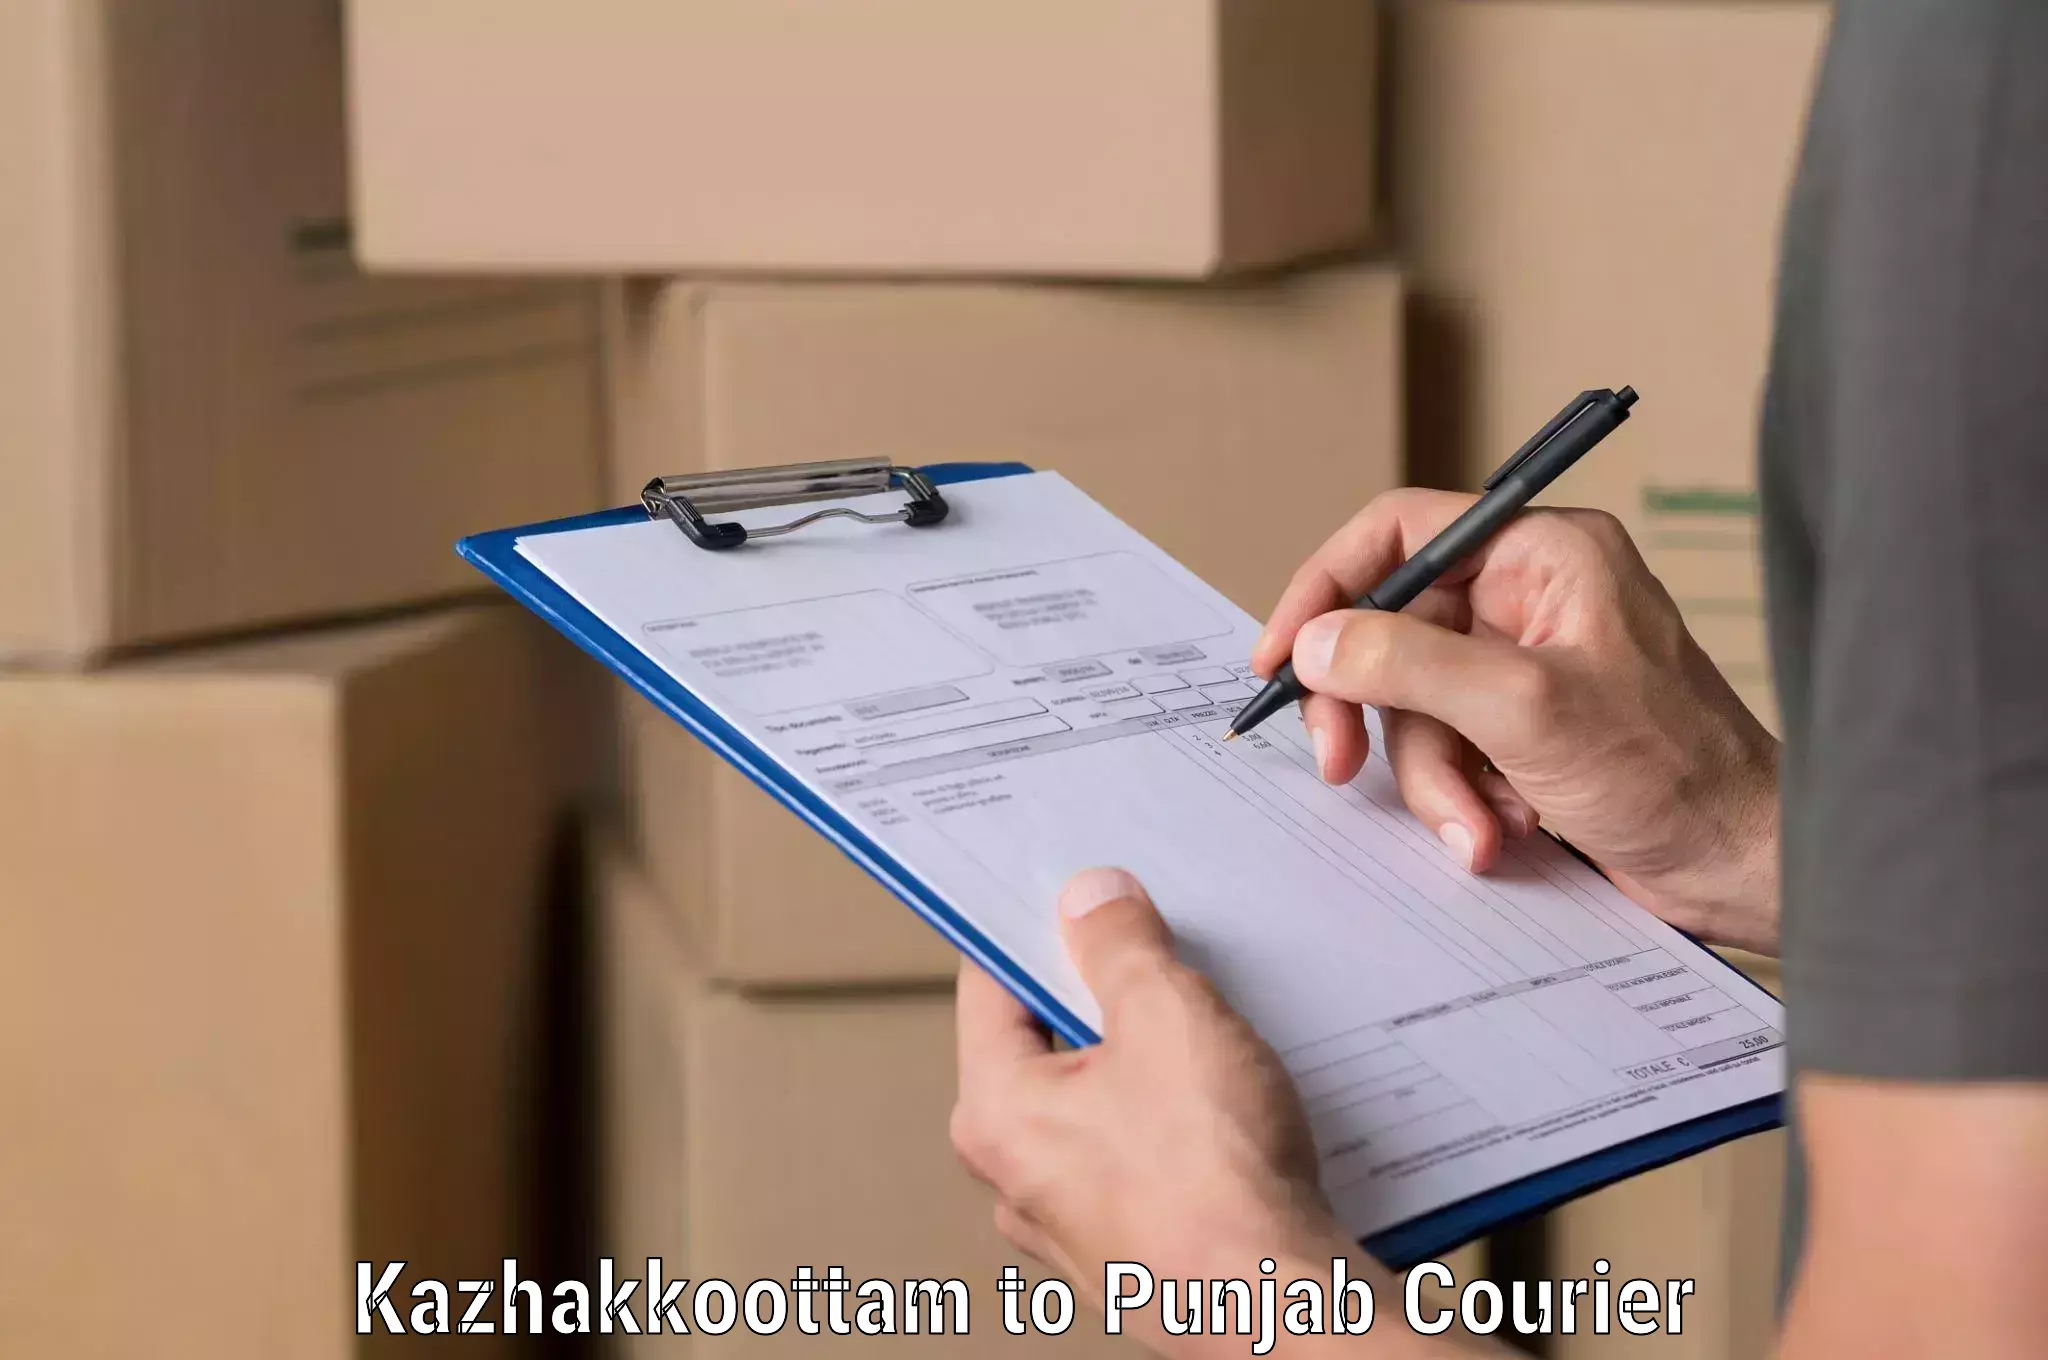 Smart shipping technology Kazhakkoottam to Punjab